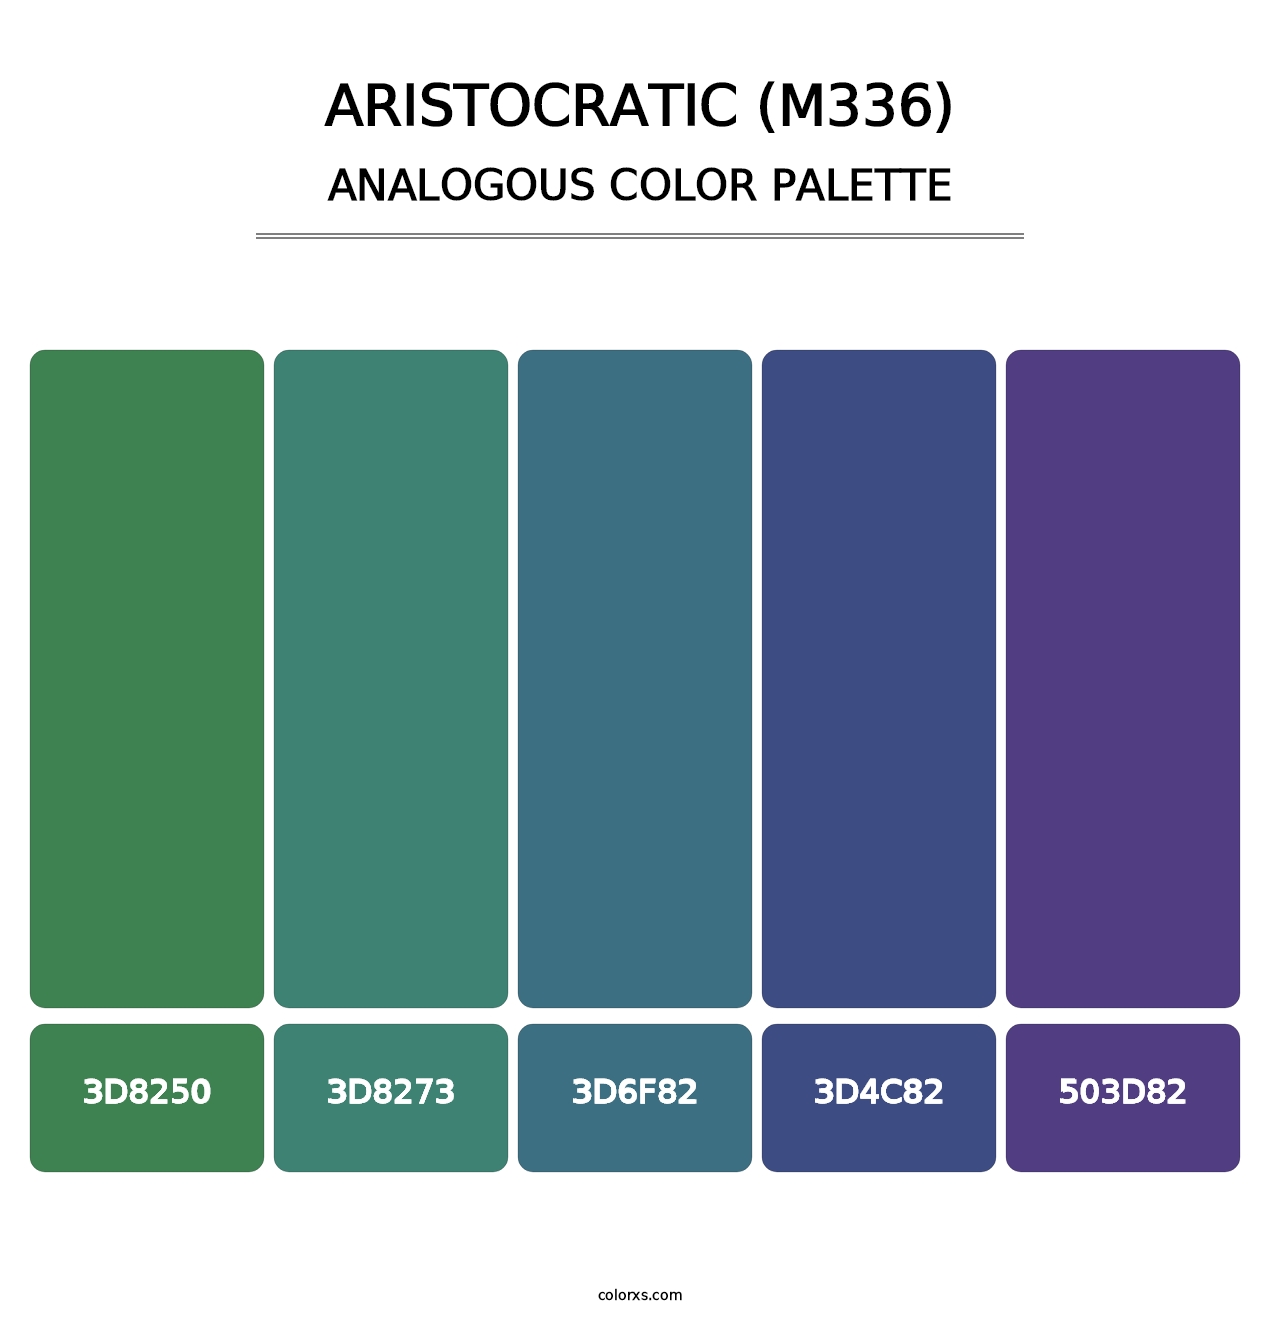 Aristocratic (M336) - Analogous Color Palette